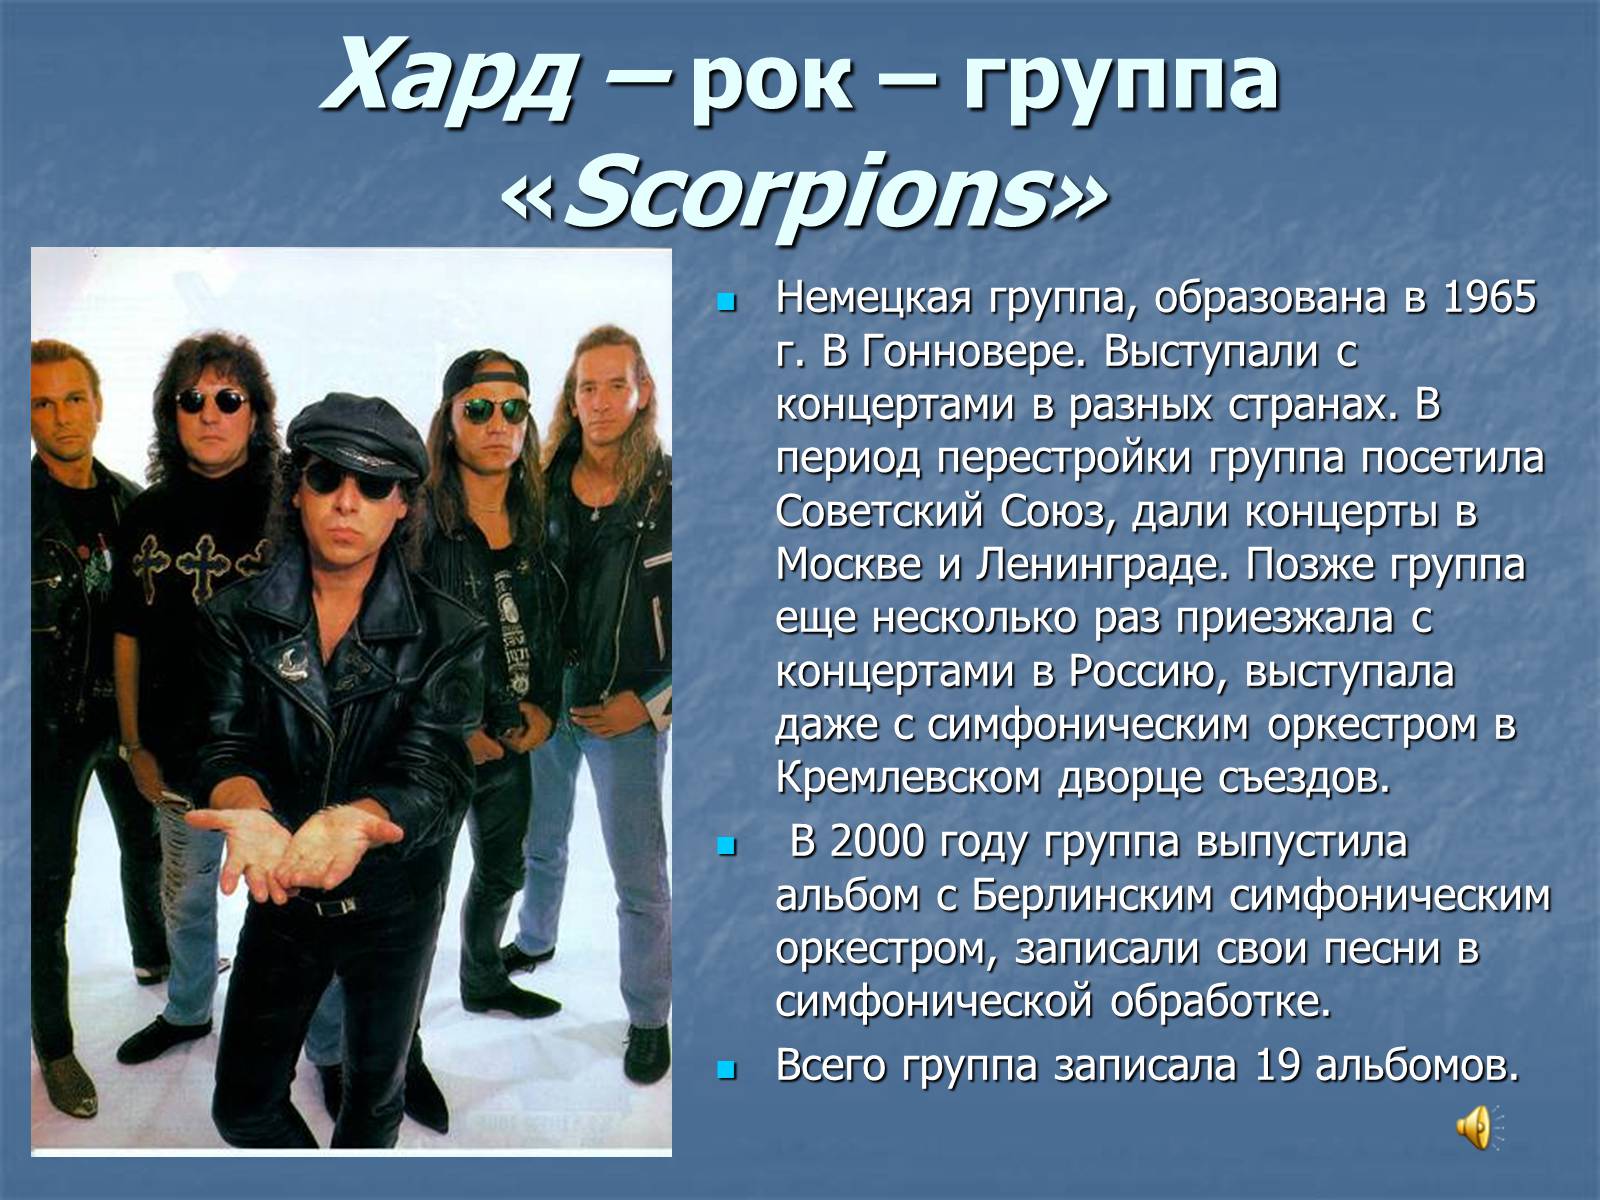 Развитие группы доклад. Группа скорпионс 1965. Презентация на тему рок. Презентация на тему рок группа. Доклад про рок группу.